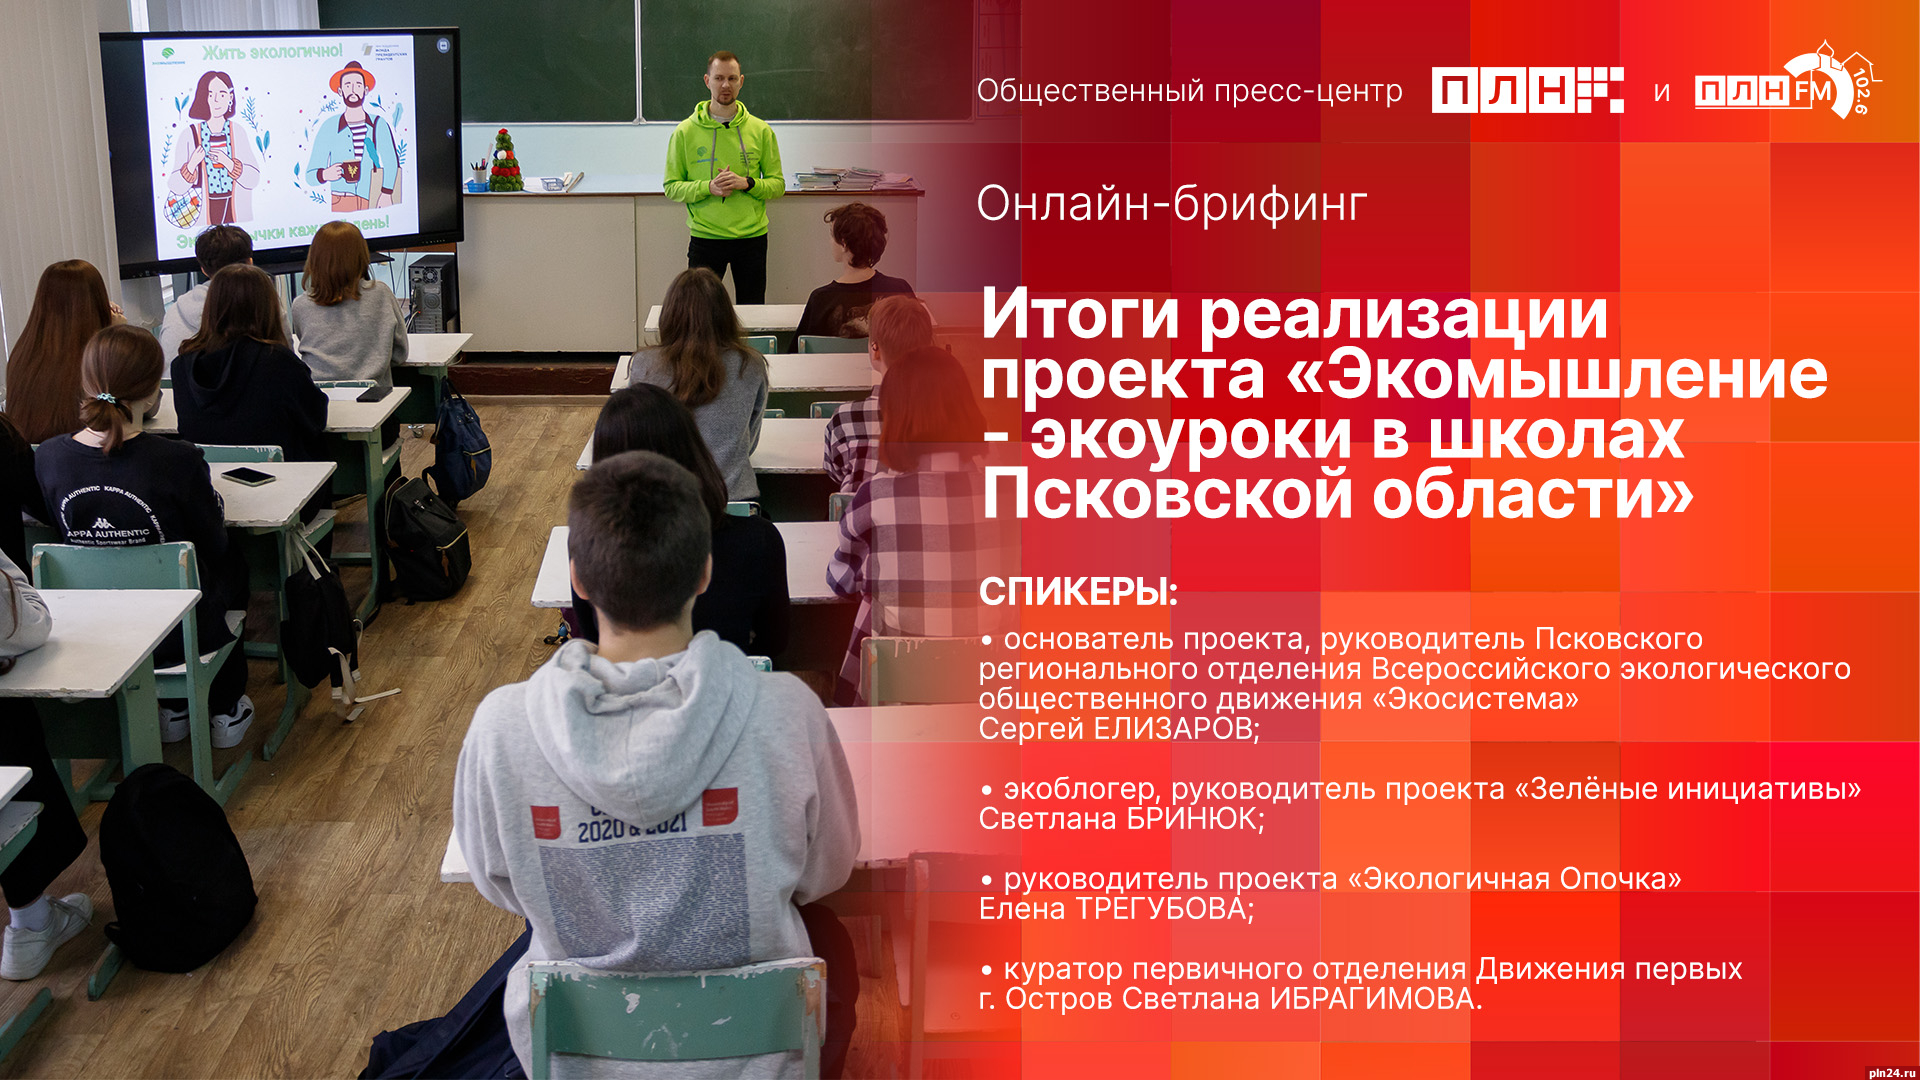 Итоги проекта «Экомышление - экоуроки в школах Псковской области» подведут в пресс-центре ПЛН